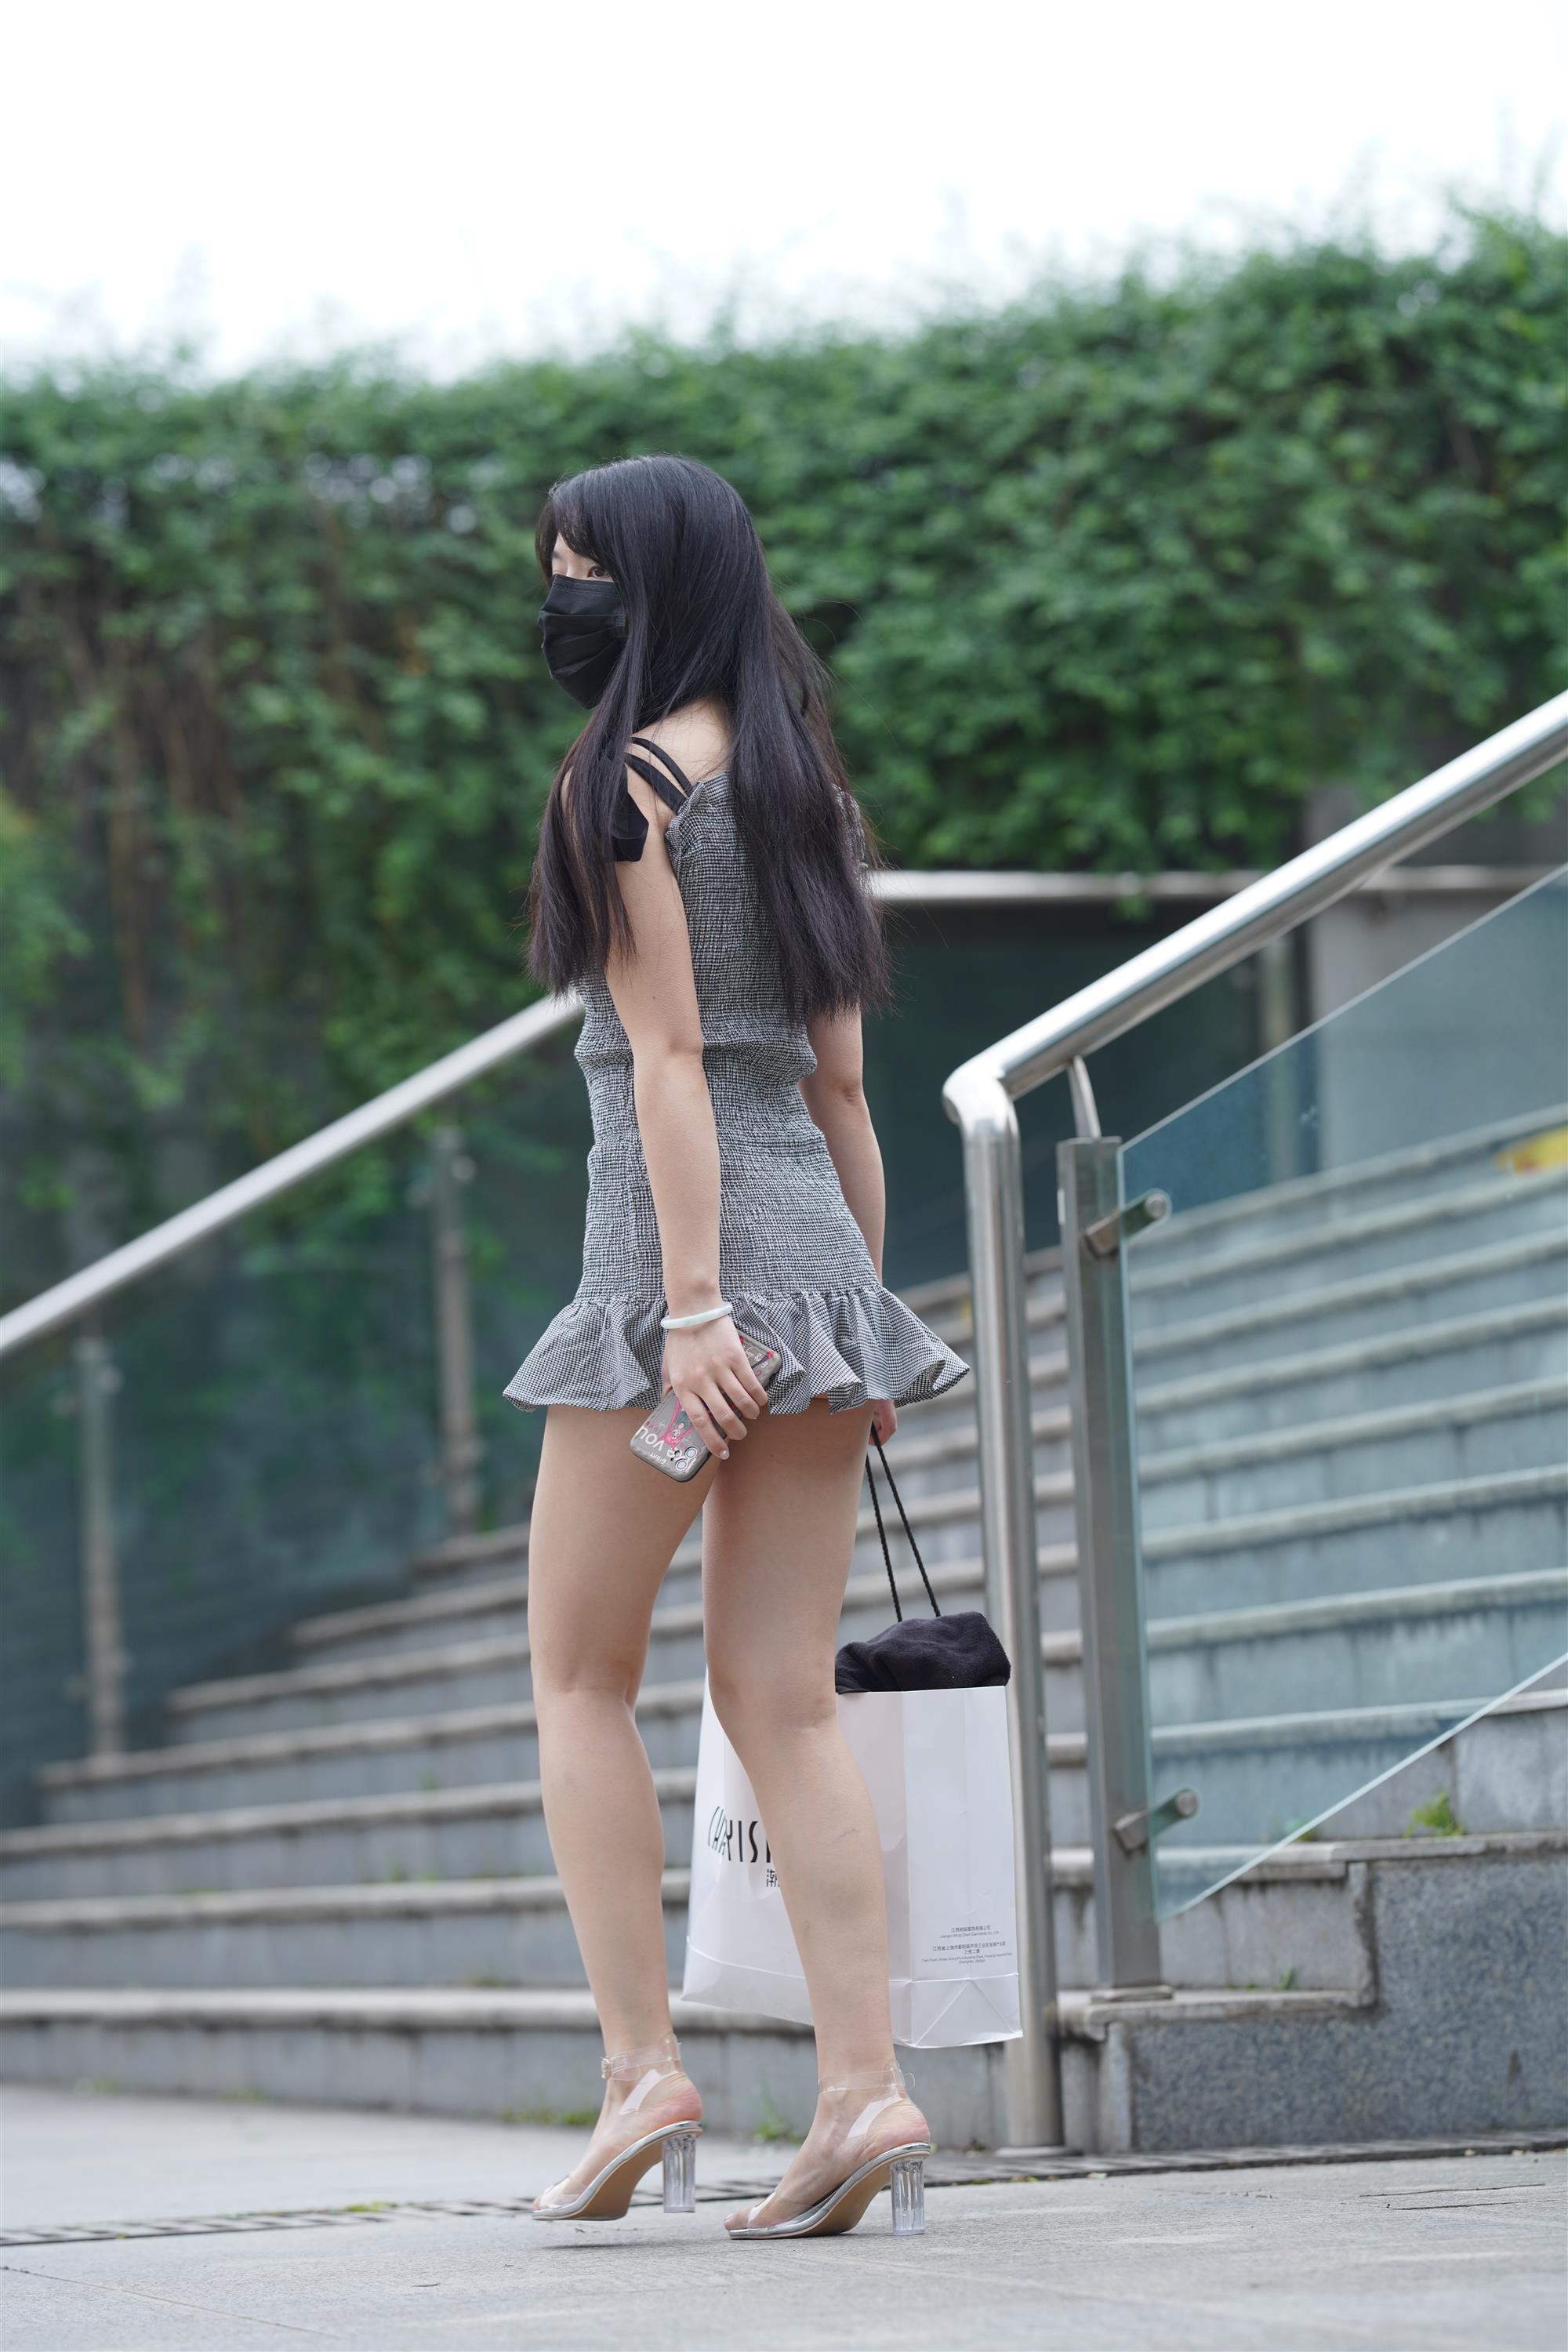 Street Girl In Short Skirt - 312.jpg